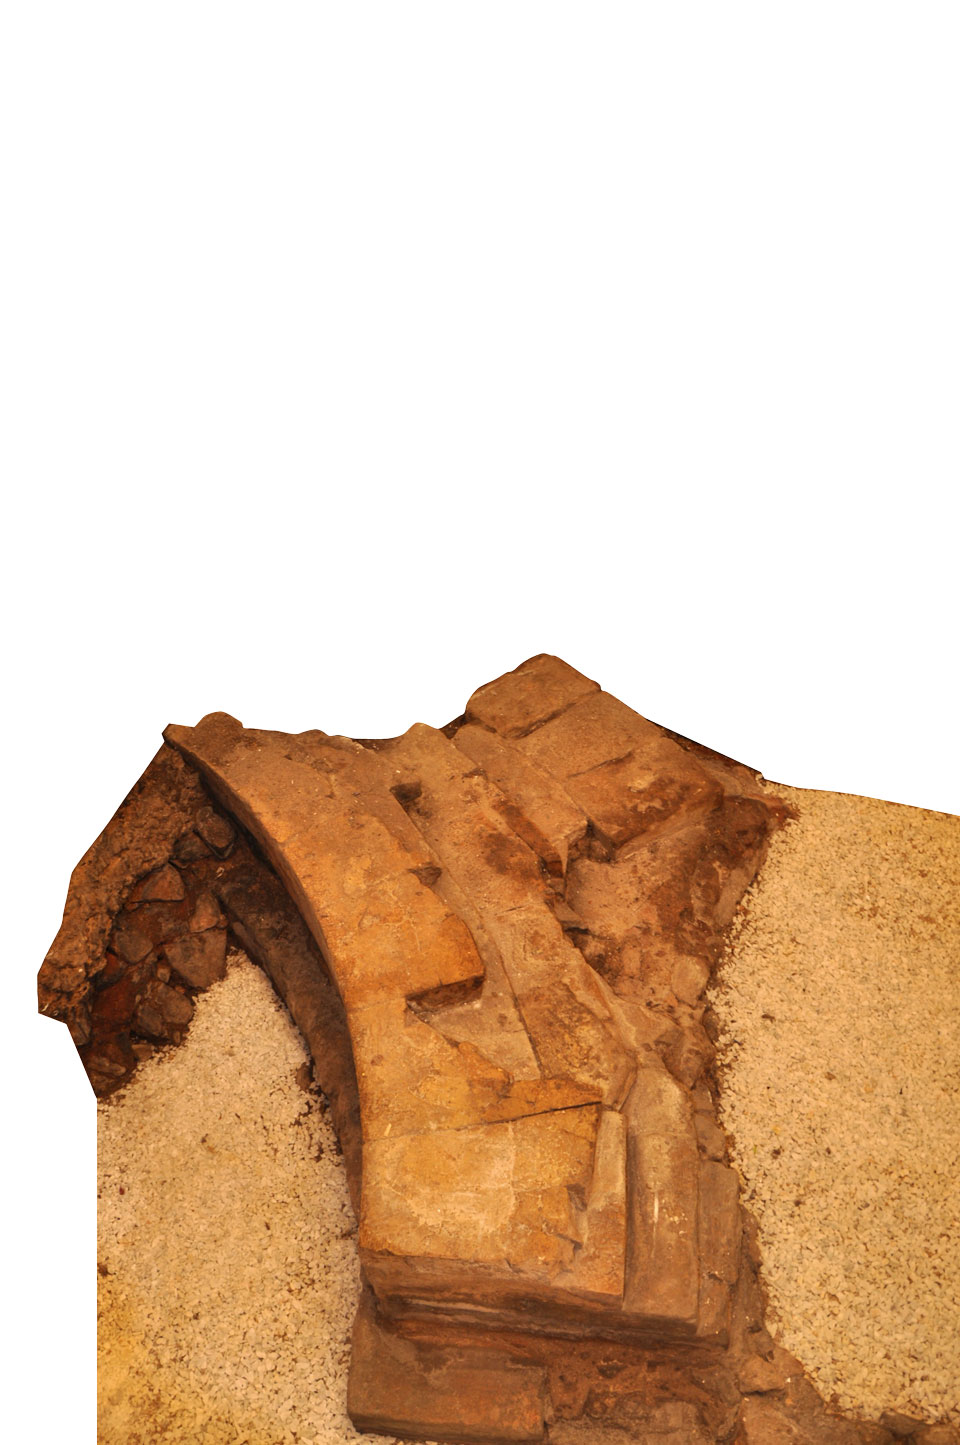 Particolare della nicchia del frigidarium (Archivio Museo Naturalistico Archeologico di Vicenza)